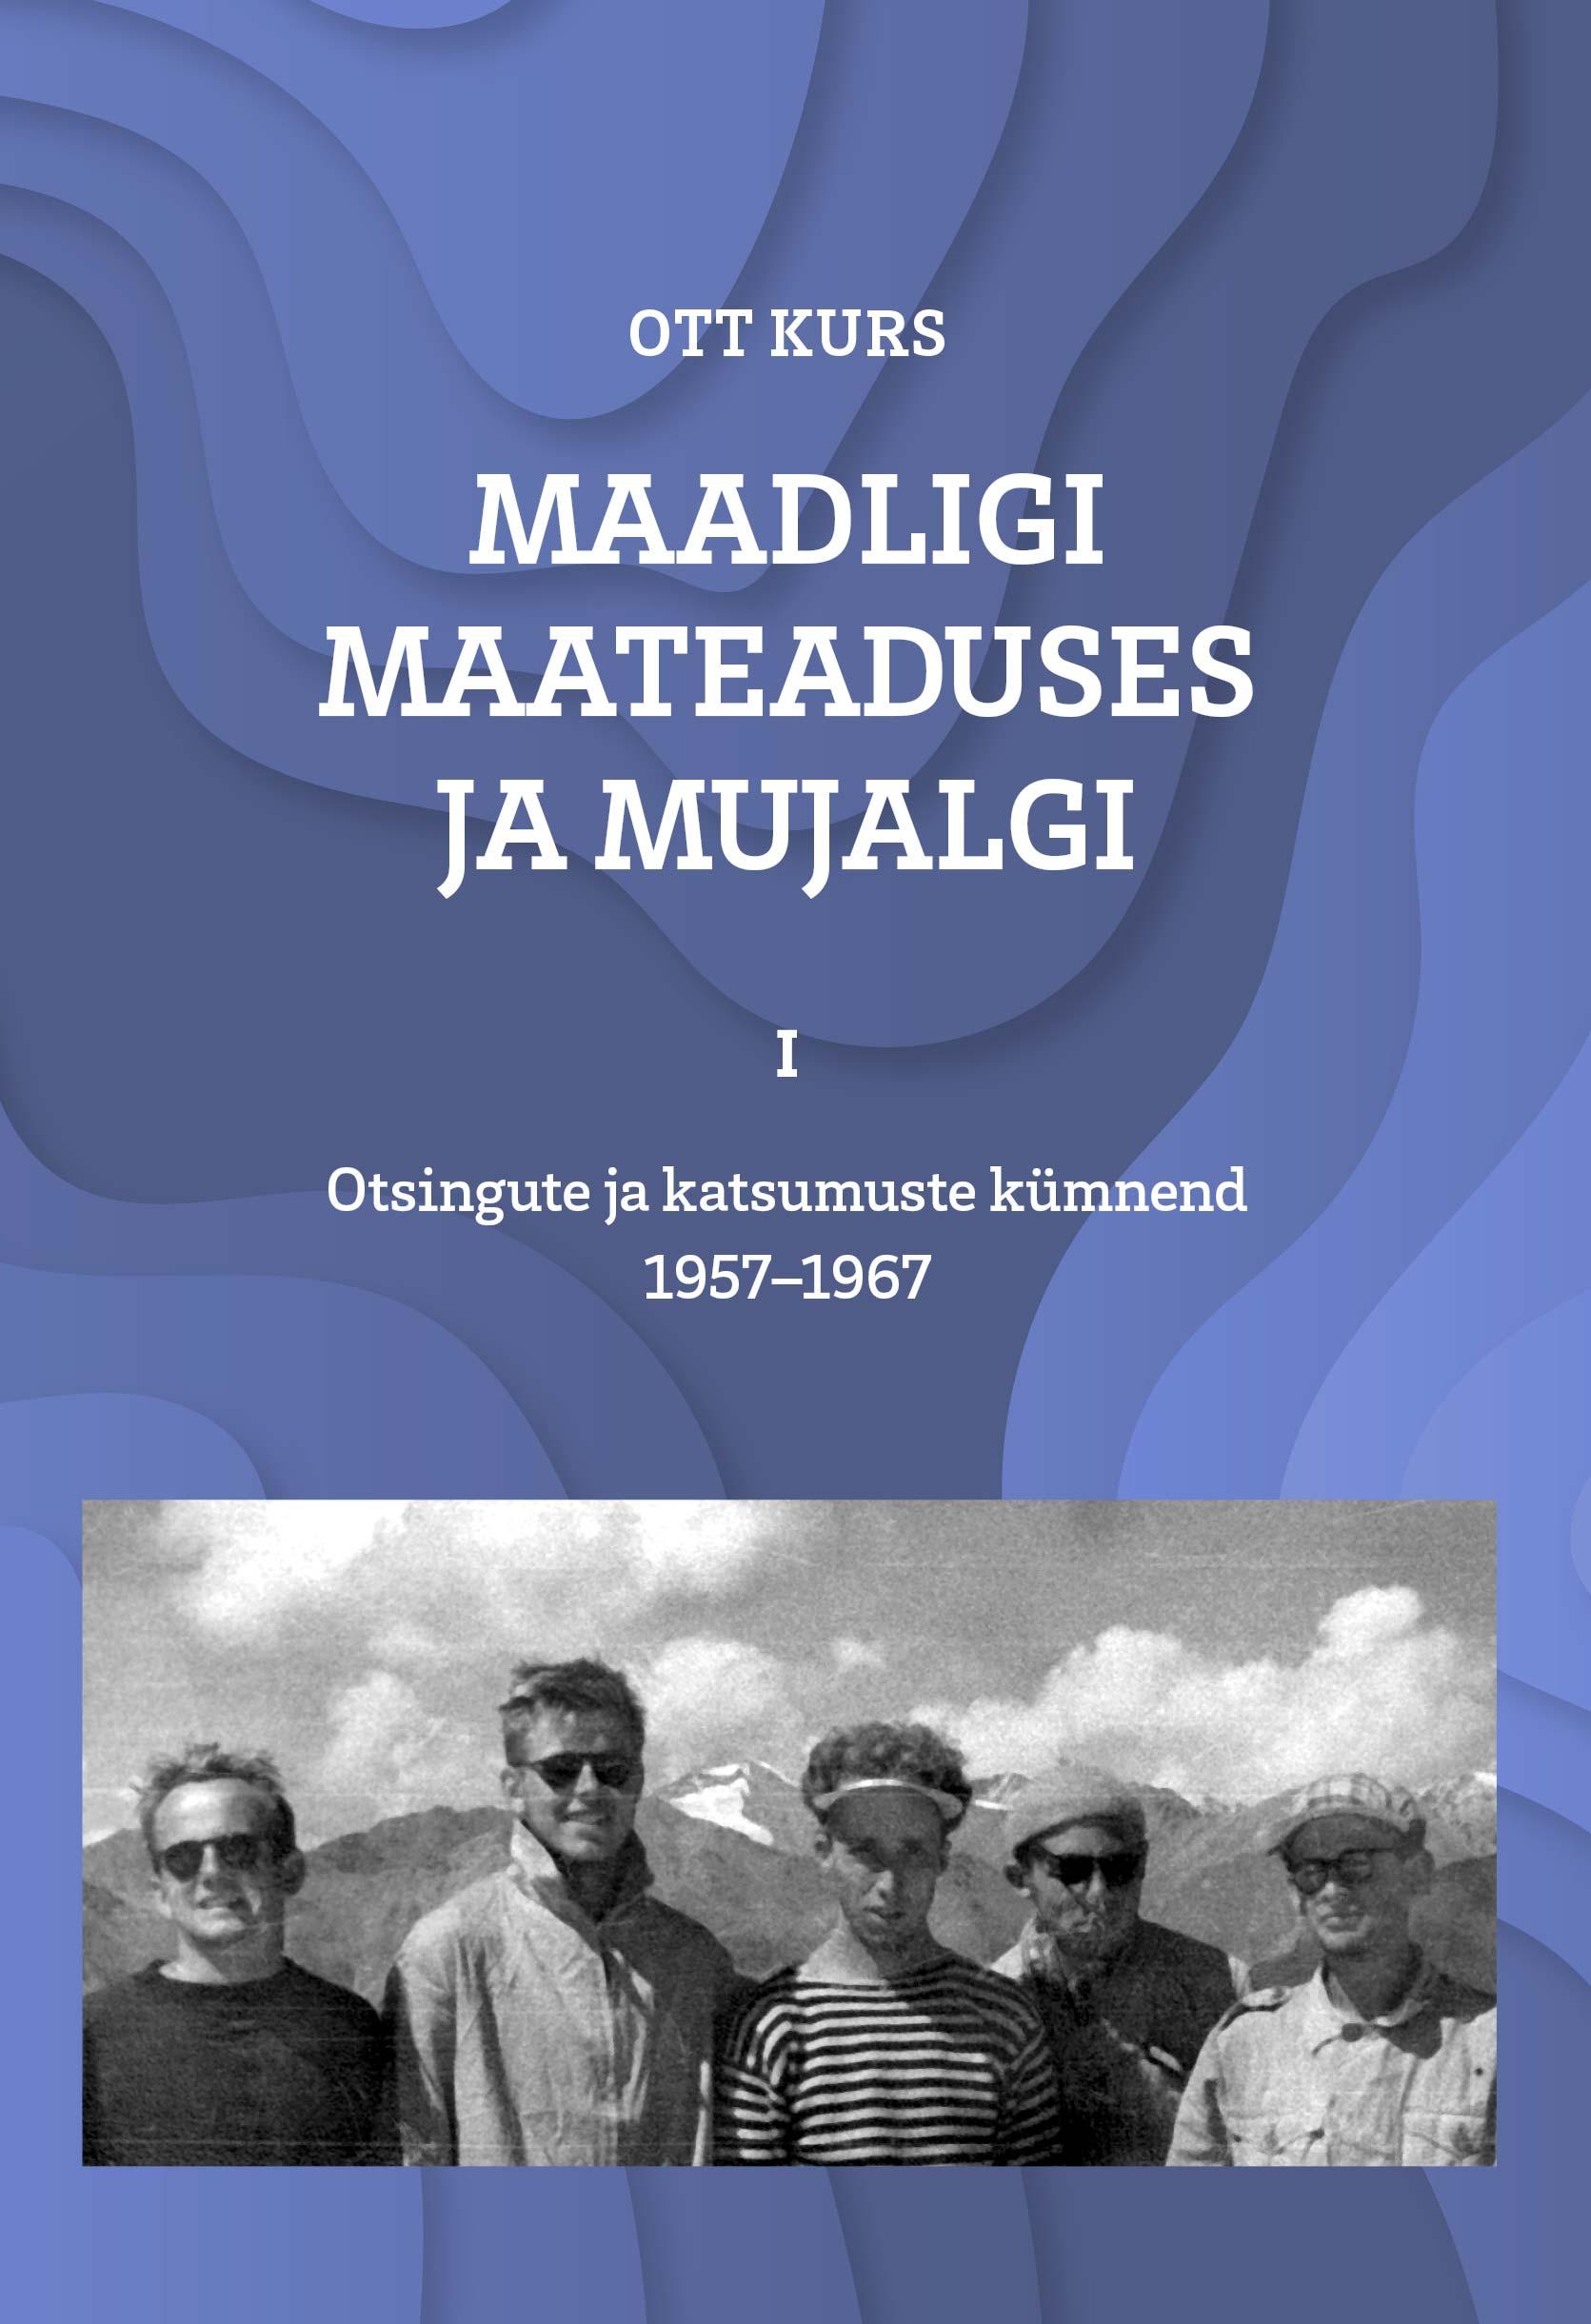 MAADLIGI MAATEADUSES JA MUJALGI, I. OTSINGUTE JA KATSUMUSTE KÜMNEND 1957-1967